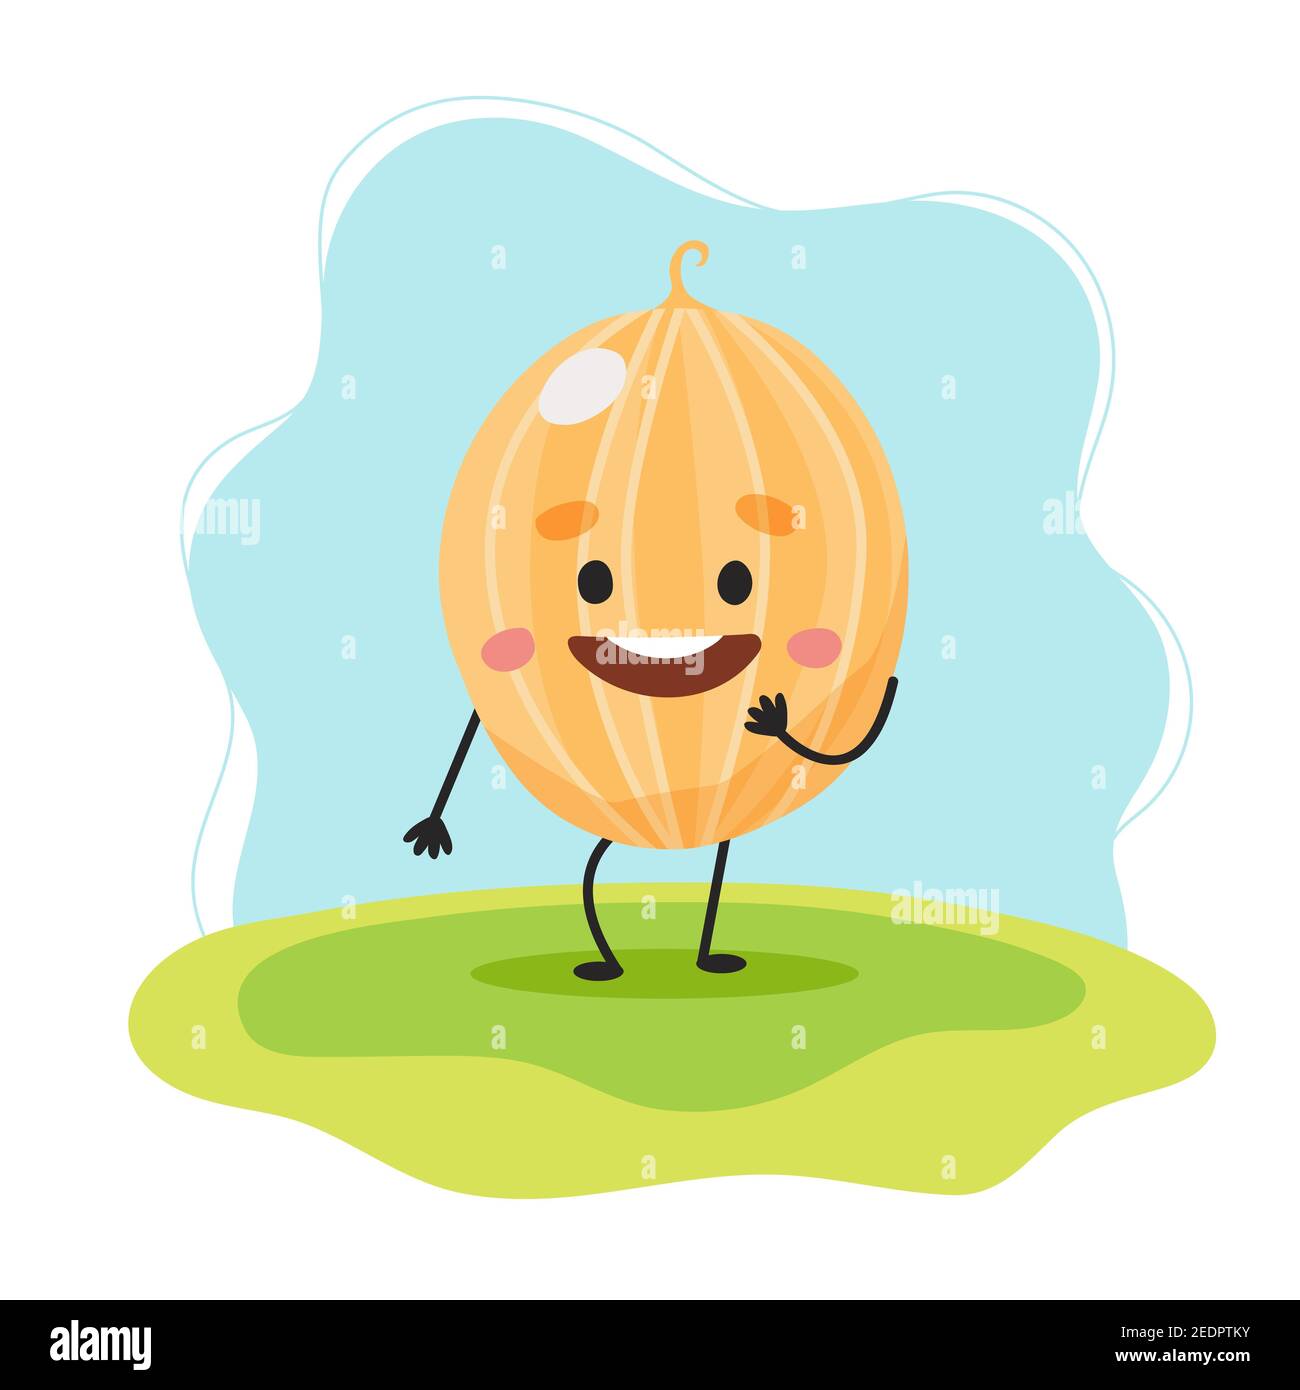 Melone carino personaggio, illustrazione per i bambini in stile cartoon Foto Stock